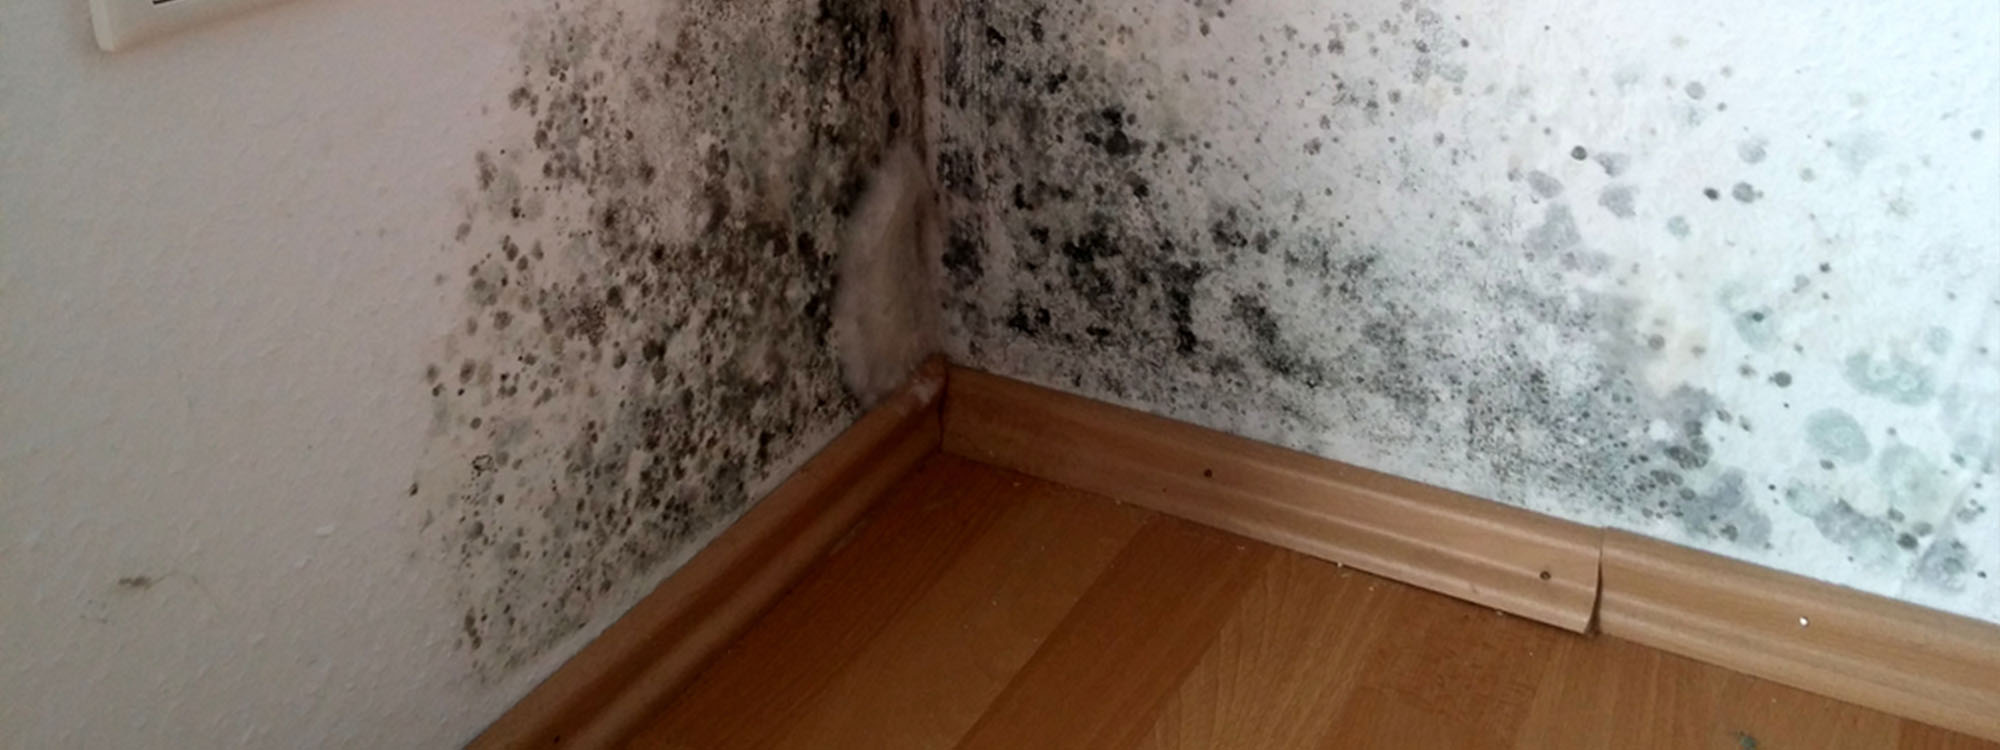 black mould in corner of room condensation